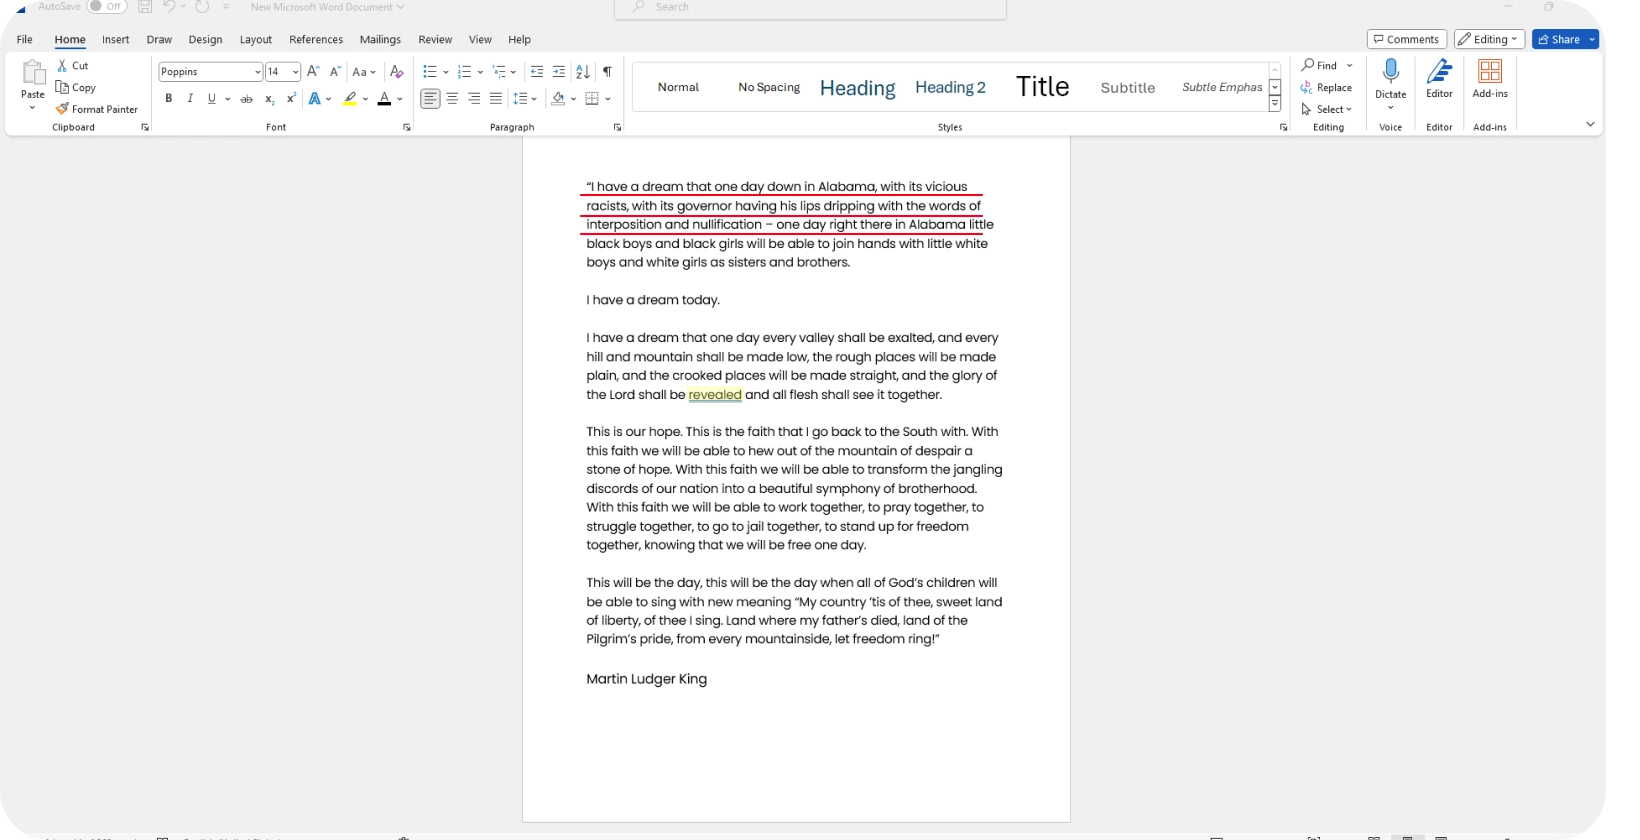 Microsoft Word dokument koji prikazuje transkripciju govora, naglašavajući efikasnost funkcije diktiranja.